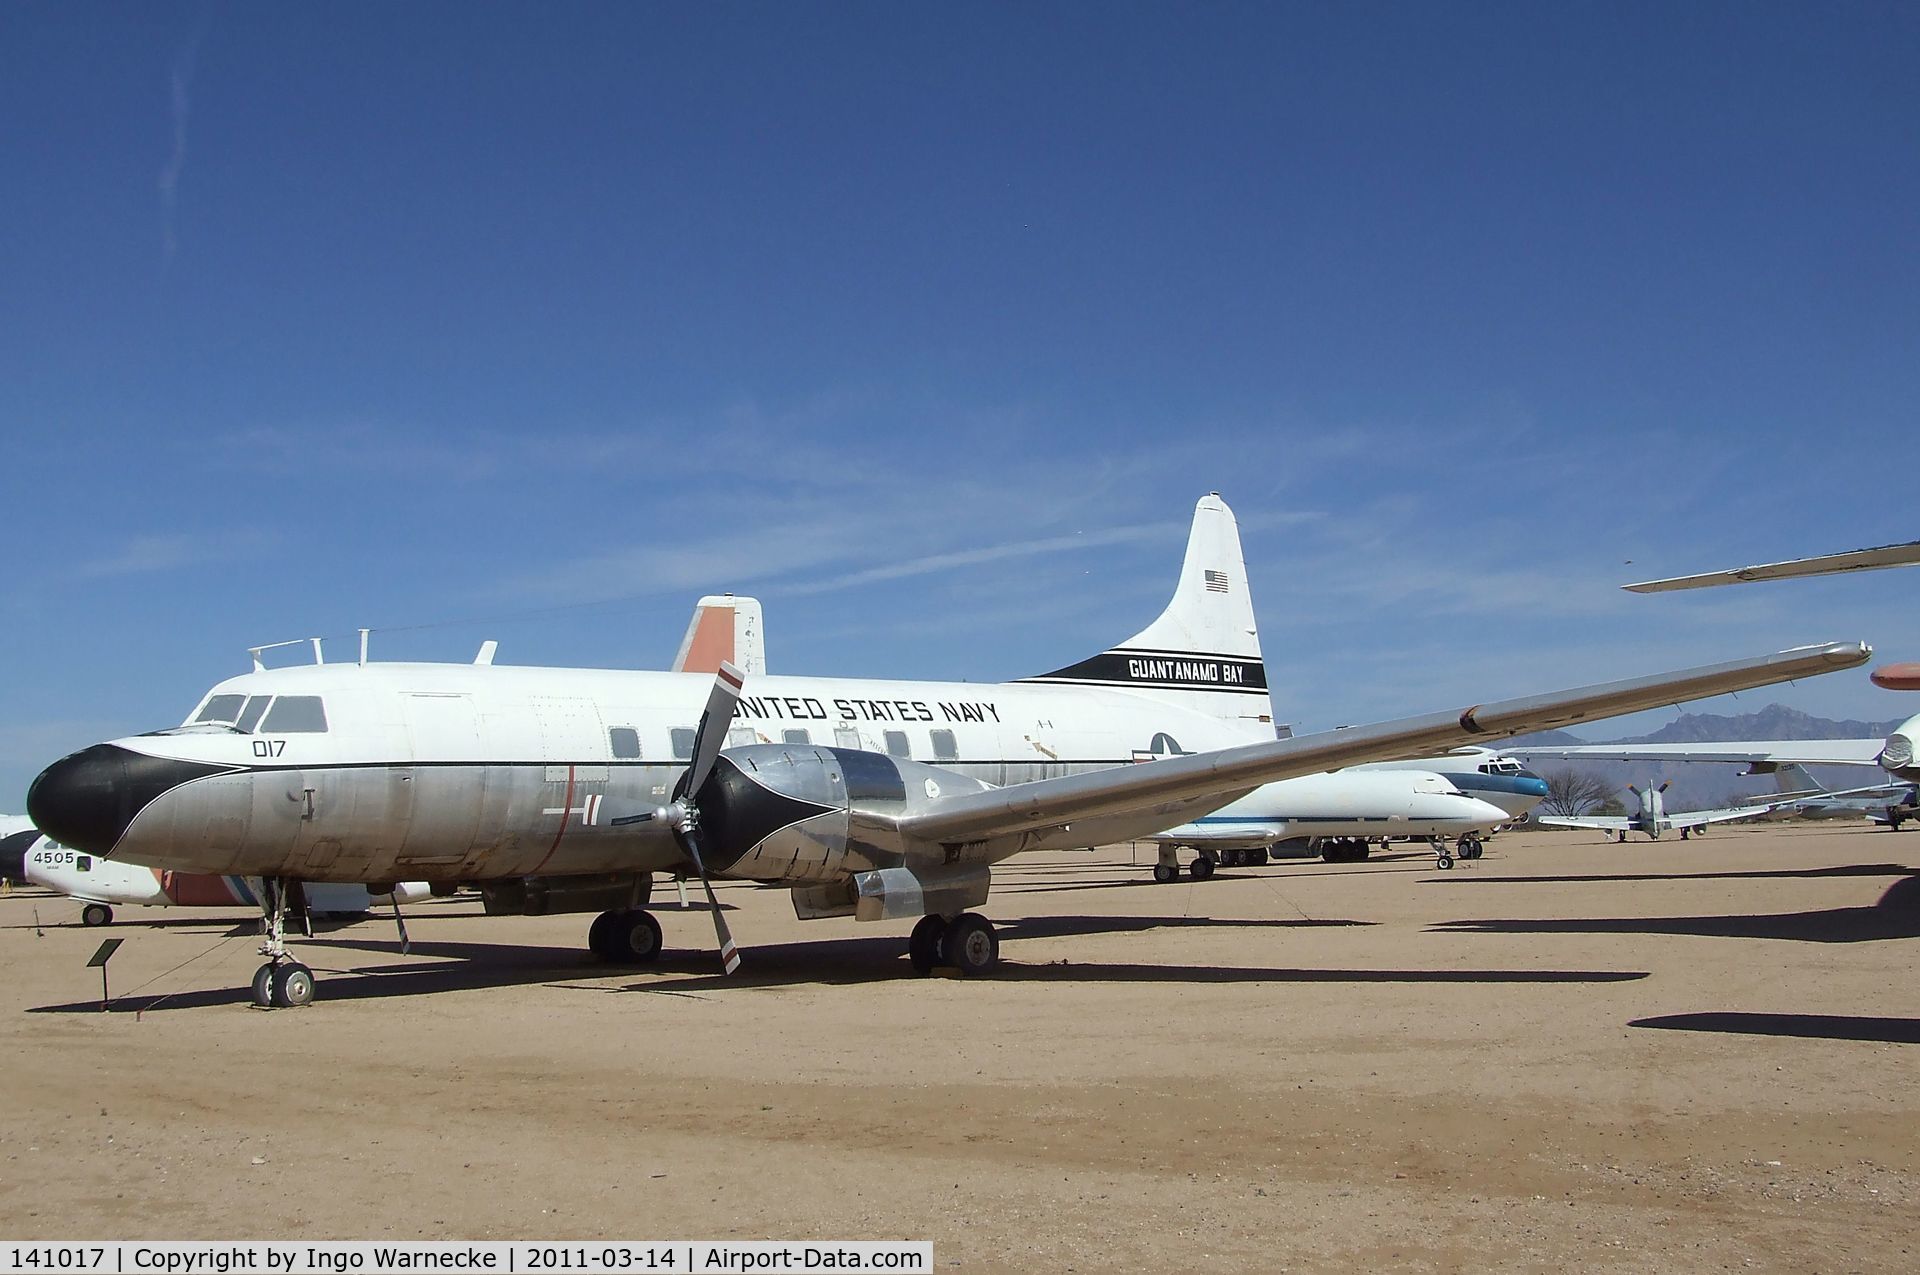 141017, 1956 Convair C-131F (R4Y-1) Samaritan C/N 300, Convair C-131F Samaritan at the Pima Air & Space Museum, Tucson AZ